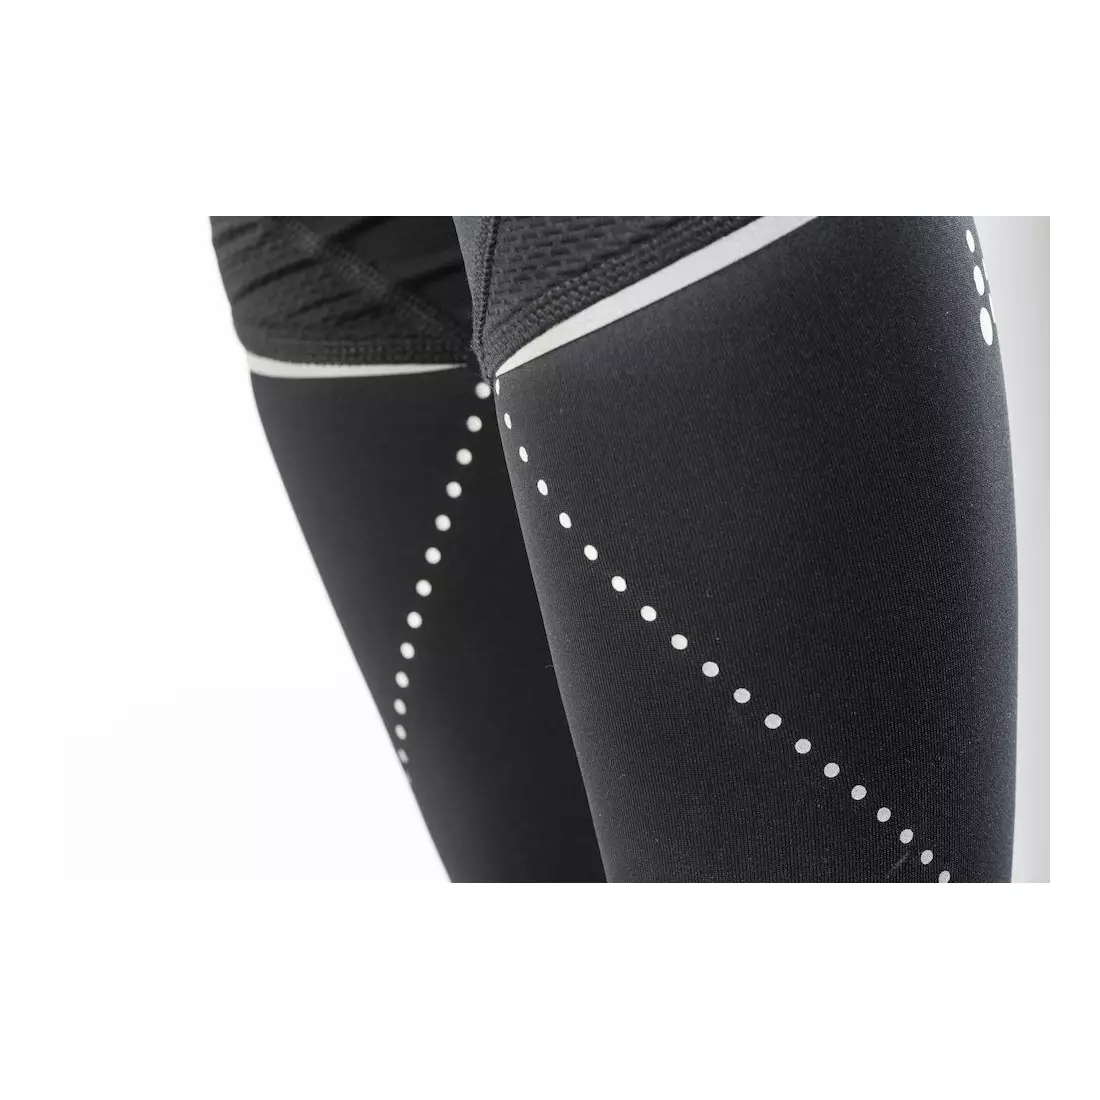 CRAFT Essential pantaloni de jogging neizolați pentru femei 1904770-9999